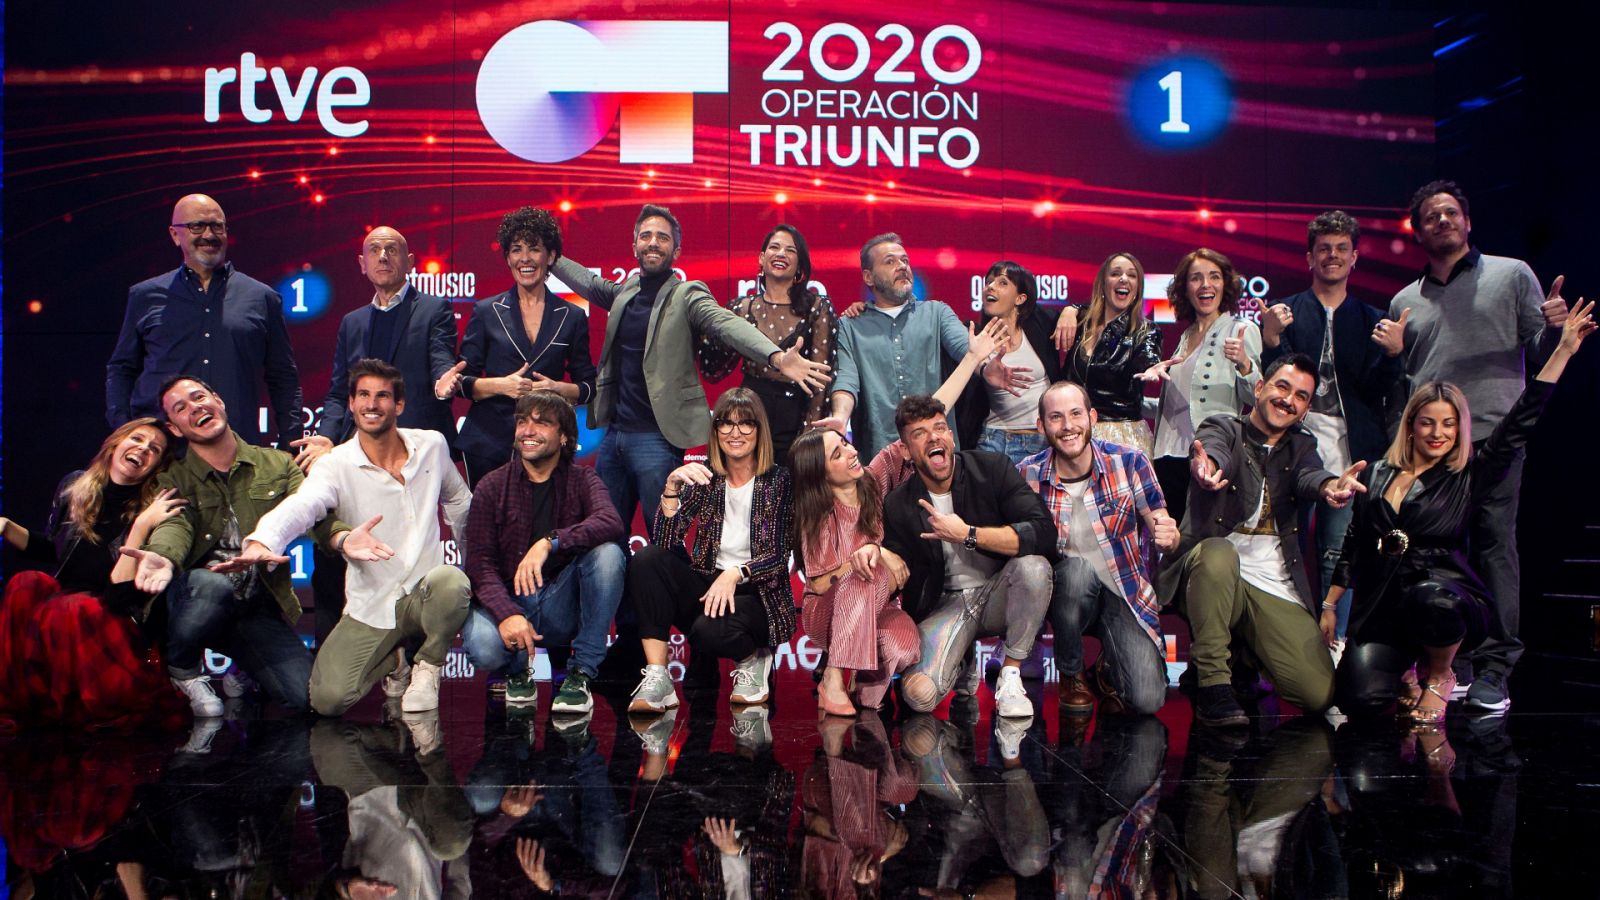 Operación Triunfo: ¡los mejores momentos de esta primera gala! - RTVE.es